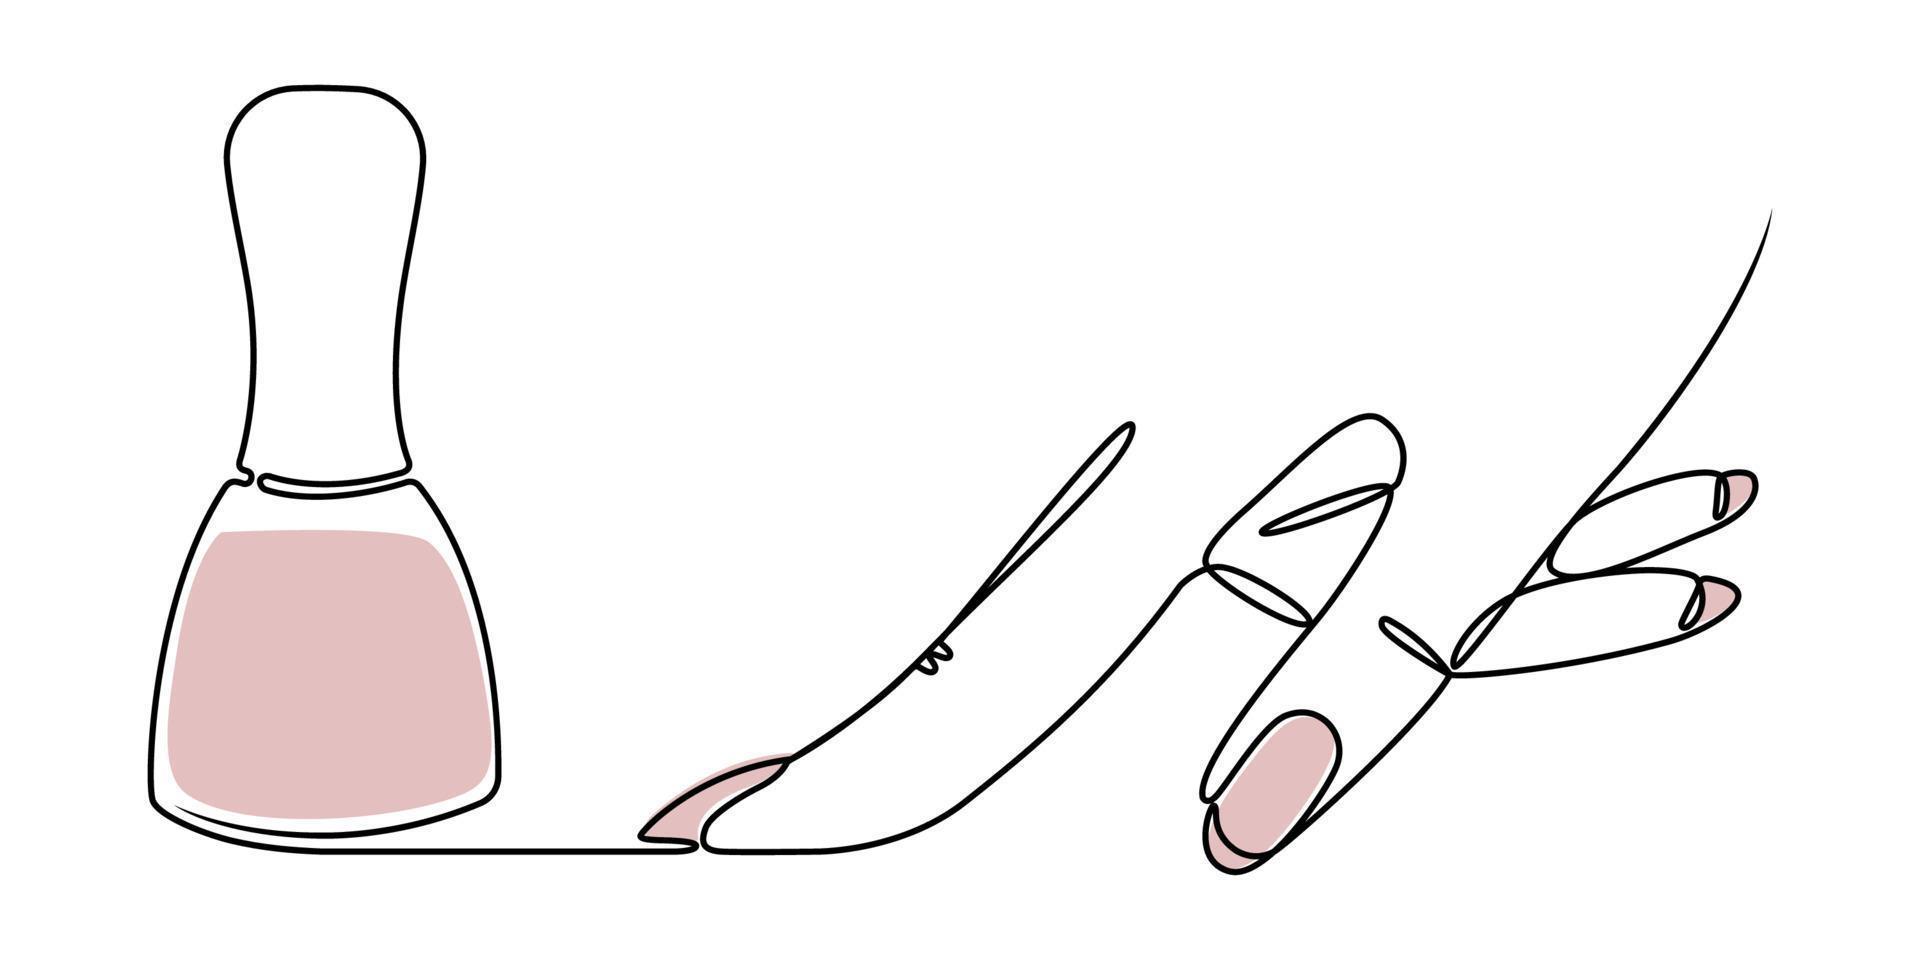 lineaire tekening van een hand en nagellak op een witte achtergrond. schets gestileerde illustratie voor het ontwerp van schoonheids- en manicuresalons. vector hand getekende illustratie.